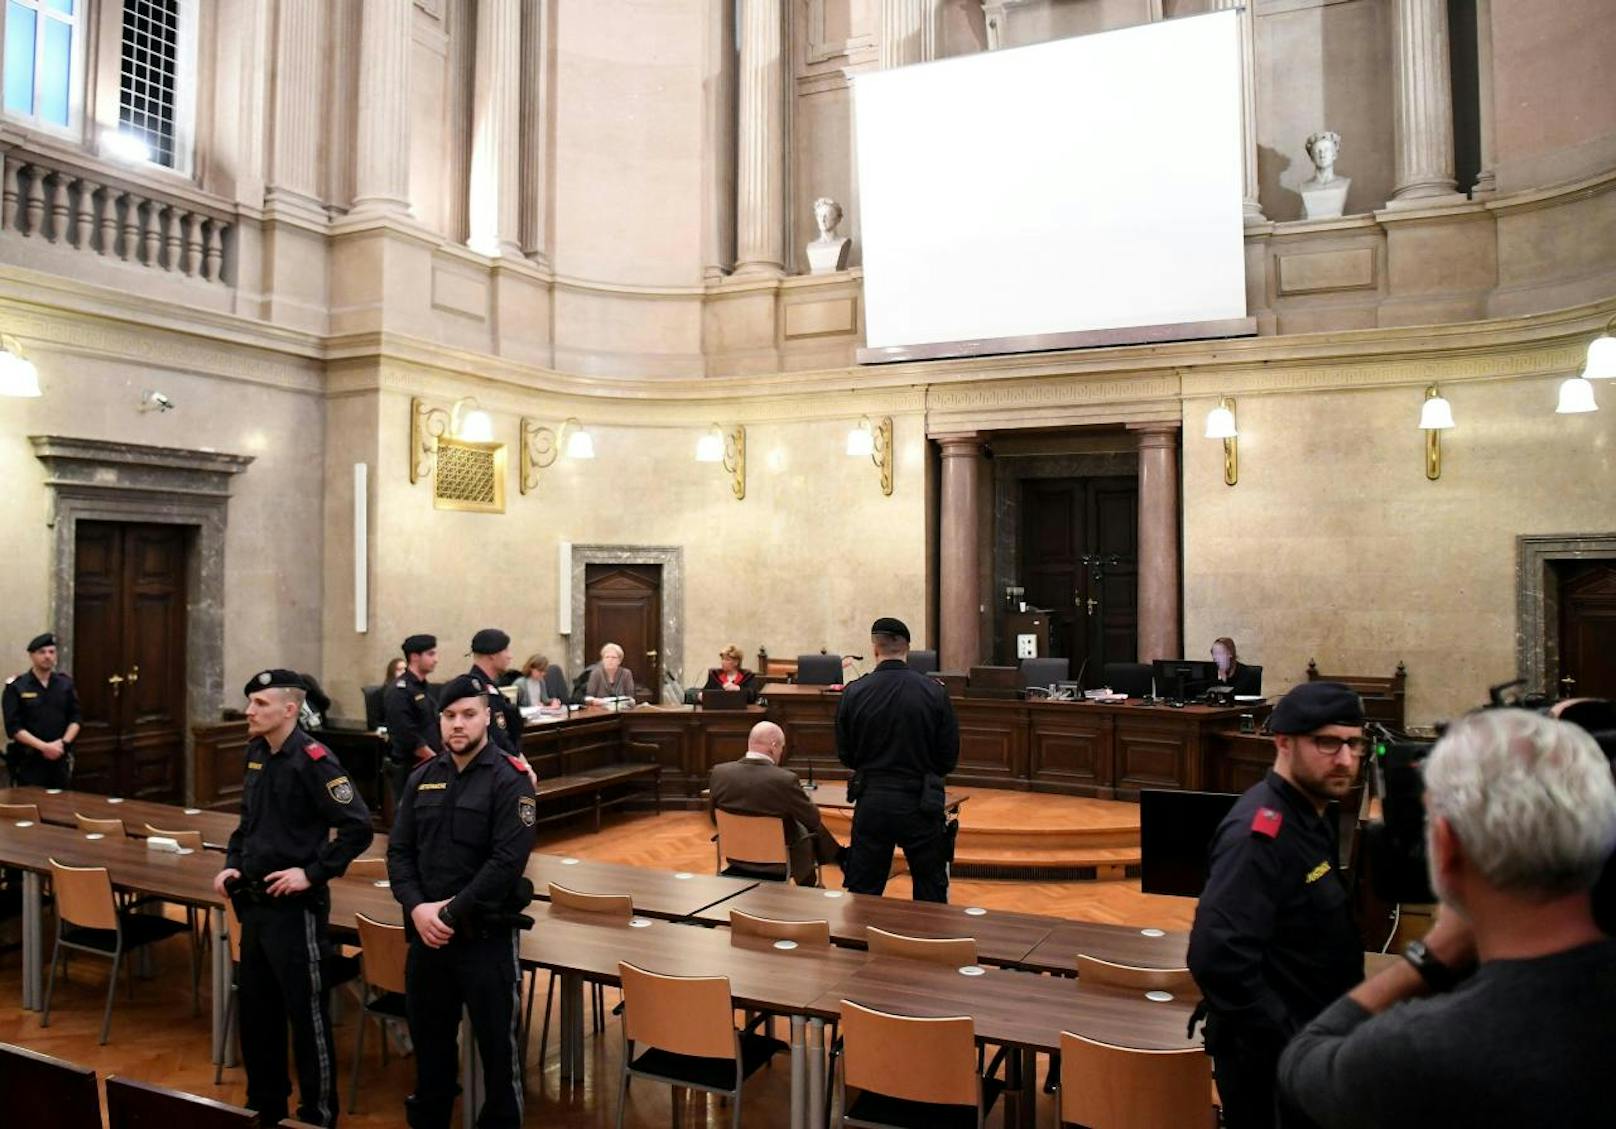 Ex-Judoka <b>Peter Seisenbacher</b> am Montag, 2. Dezember 2019, anl. des Prozesses wegen schweren sexuellen Missbrauchs von Unmündigen und Missbrauchs eines Autoritätsverhältnisses am Straflandesgericht in Wien.